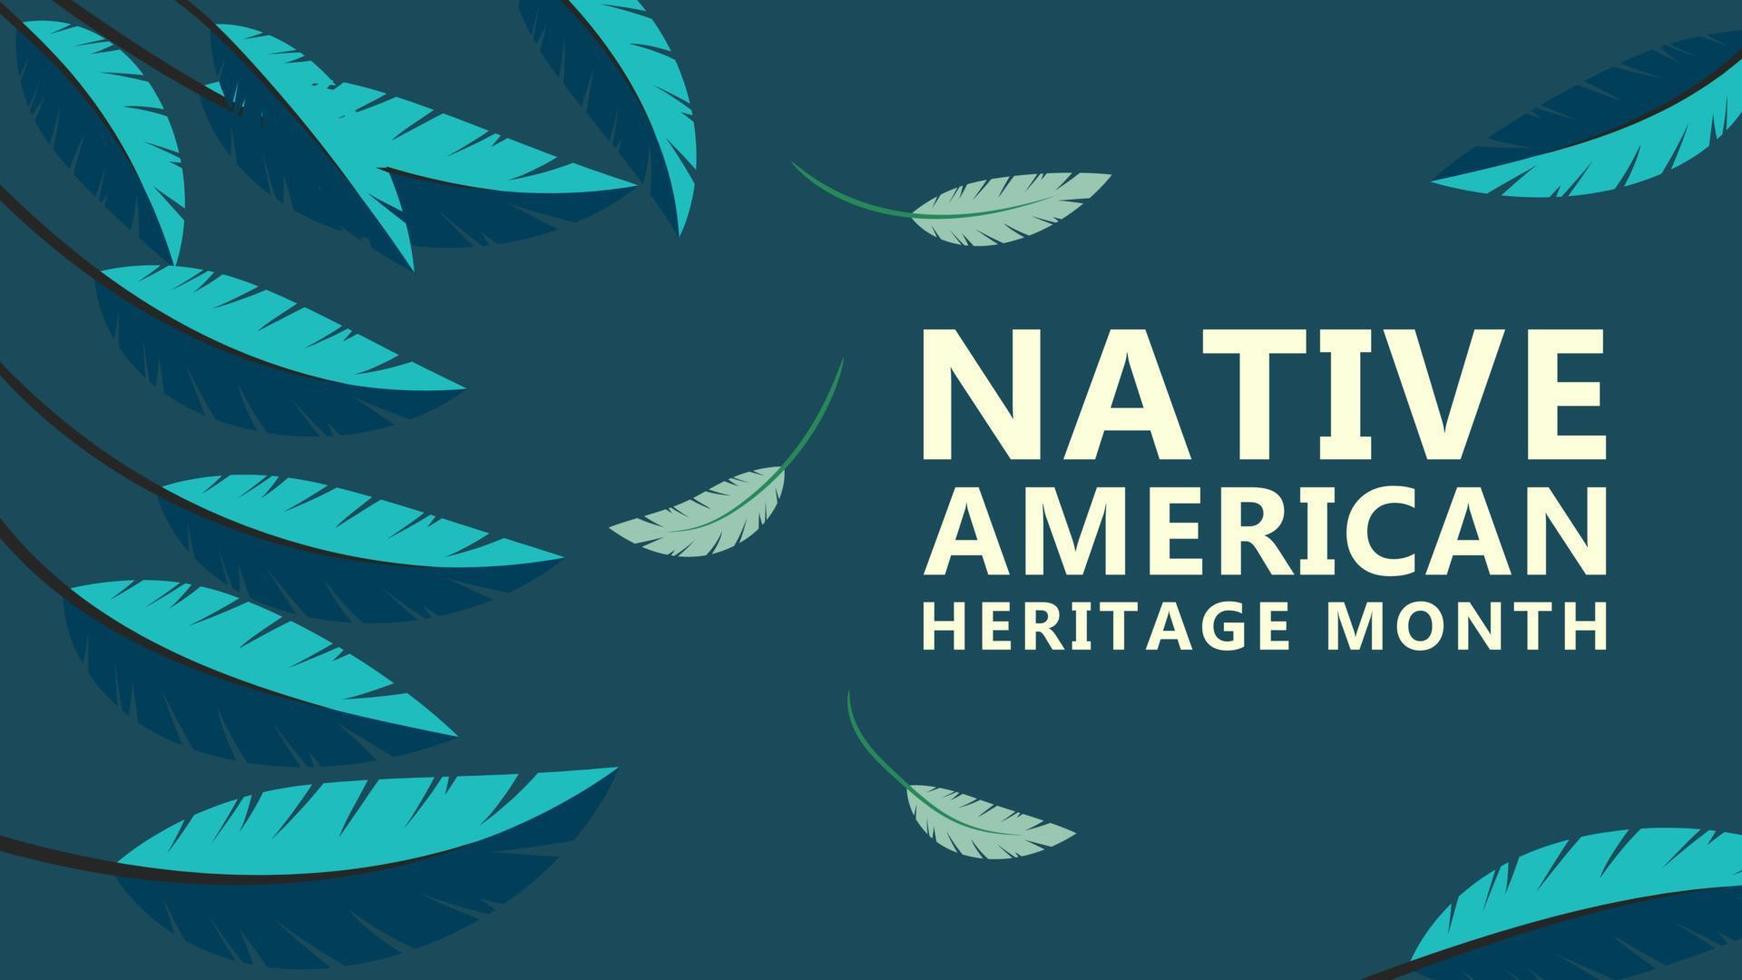 inföding amerikan arv månad. bakgrund design med fjäder ornament fira inföding indianer i amerika. vektor